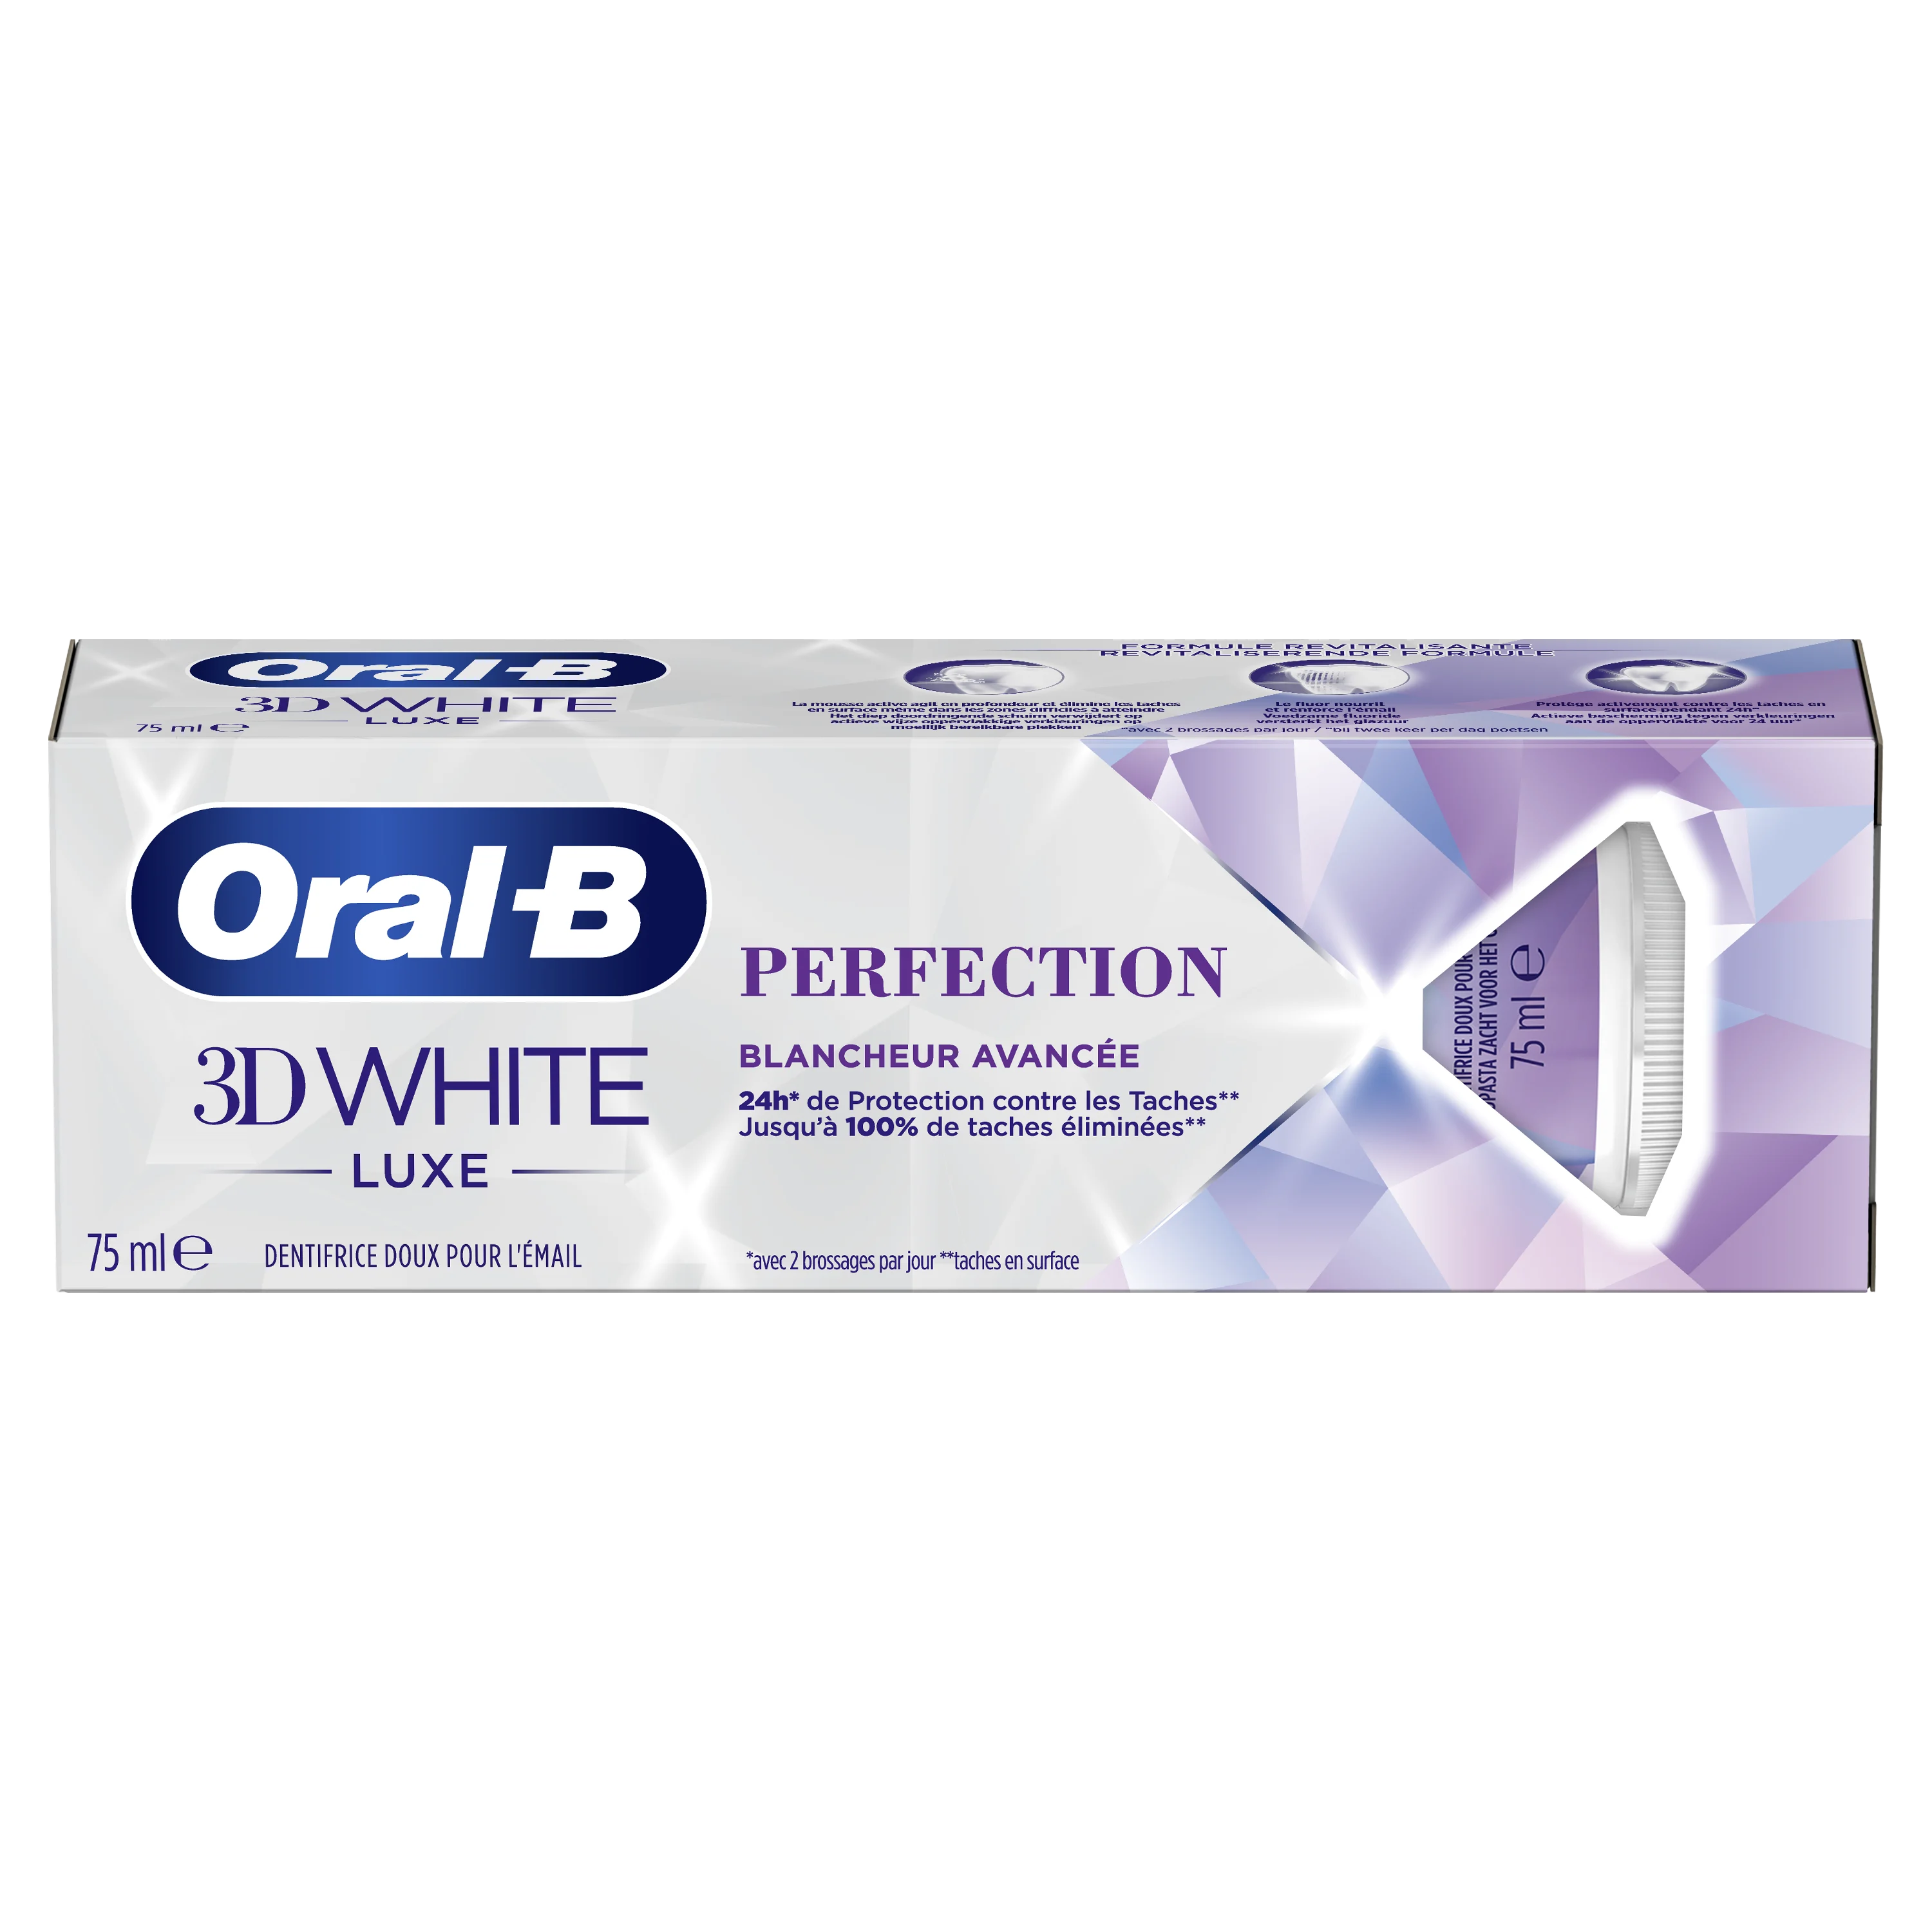 Image Product – Dentifrices et bains de bouche pour enfants - 3D White - Oral-B 3D White Luxe Perfection dentifrice - FR – FR 